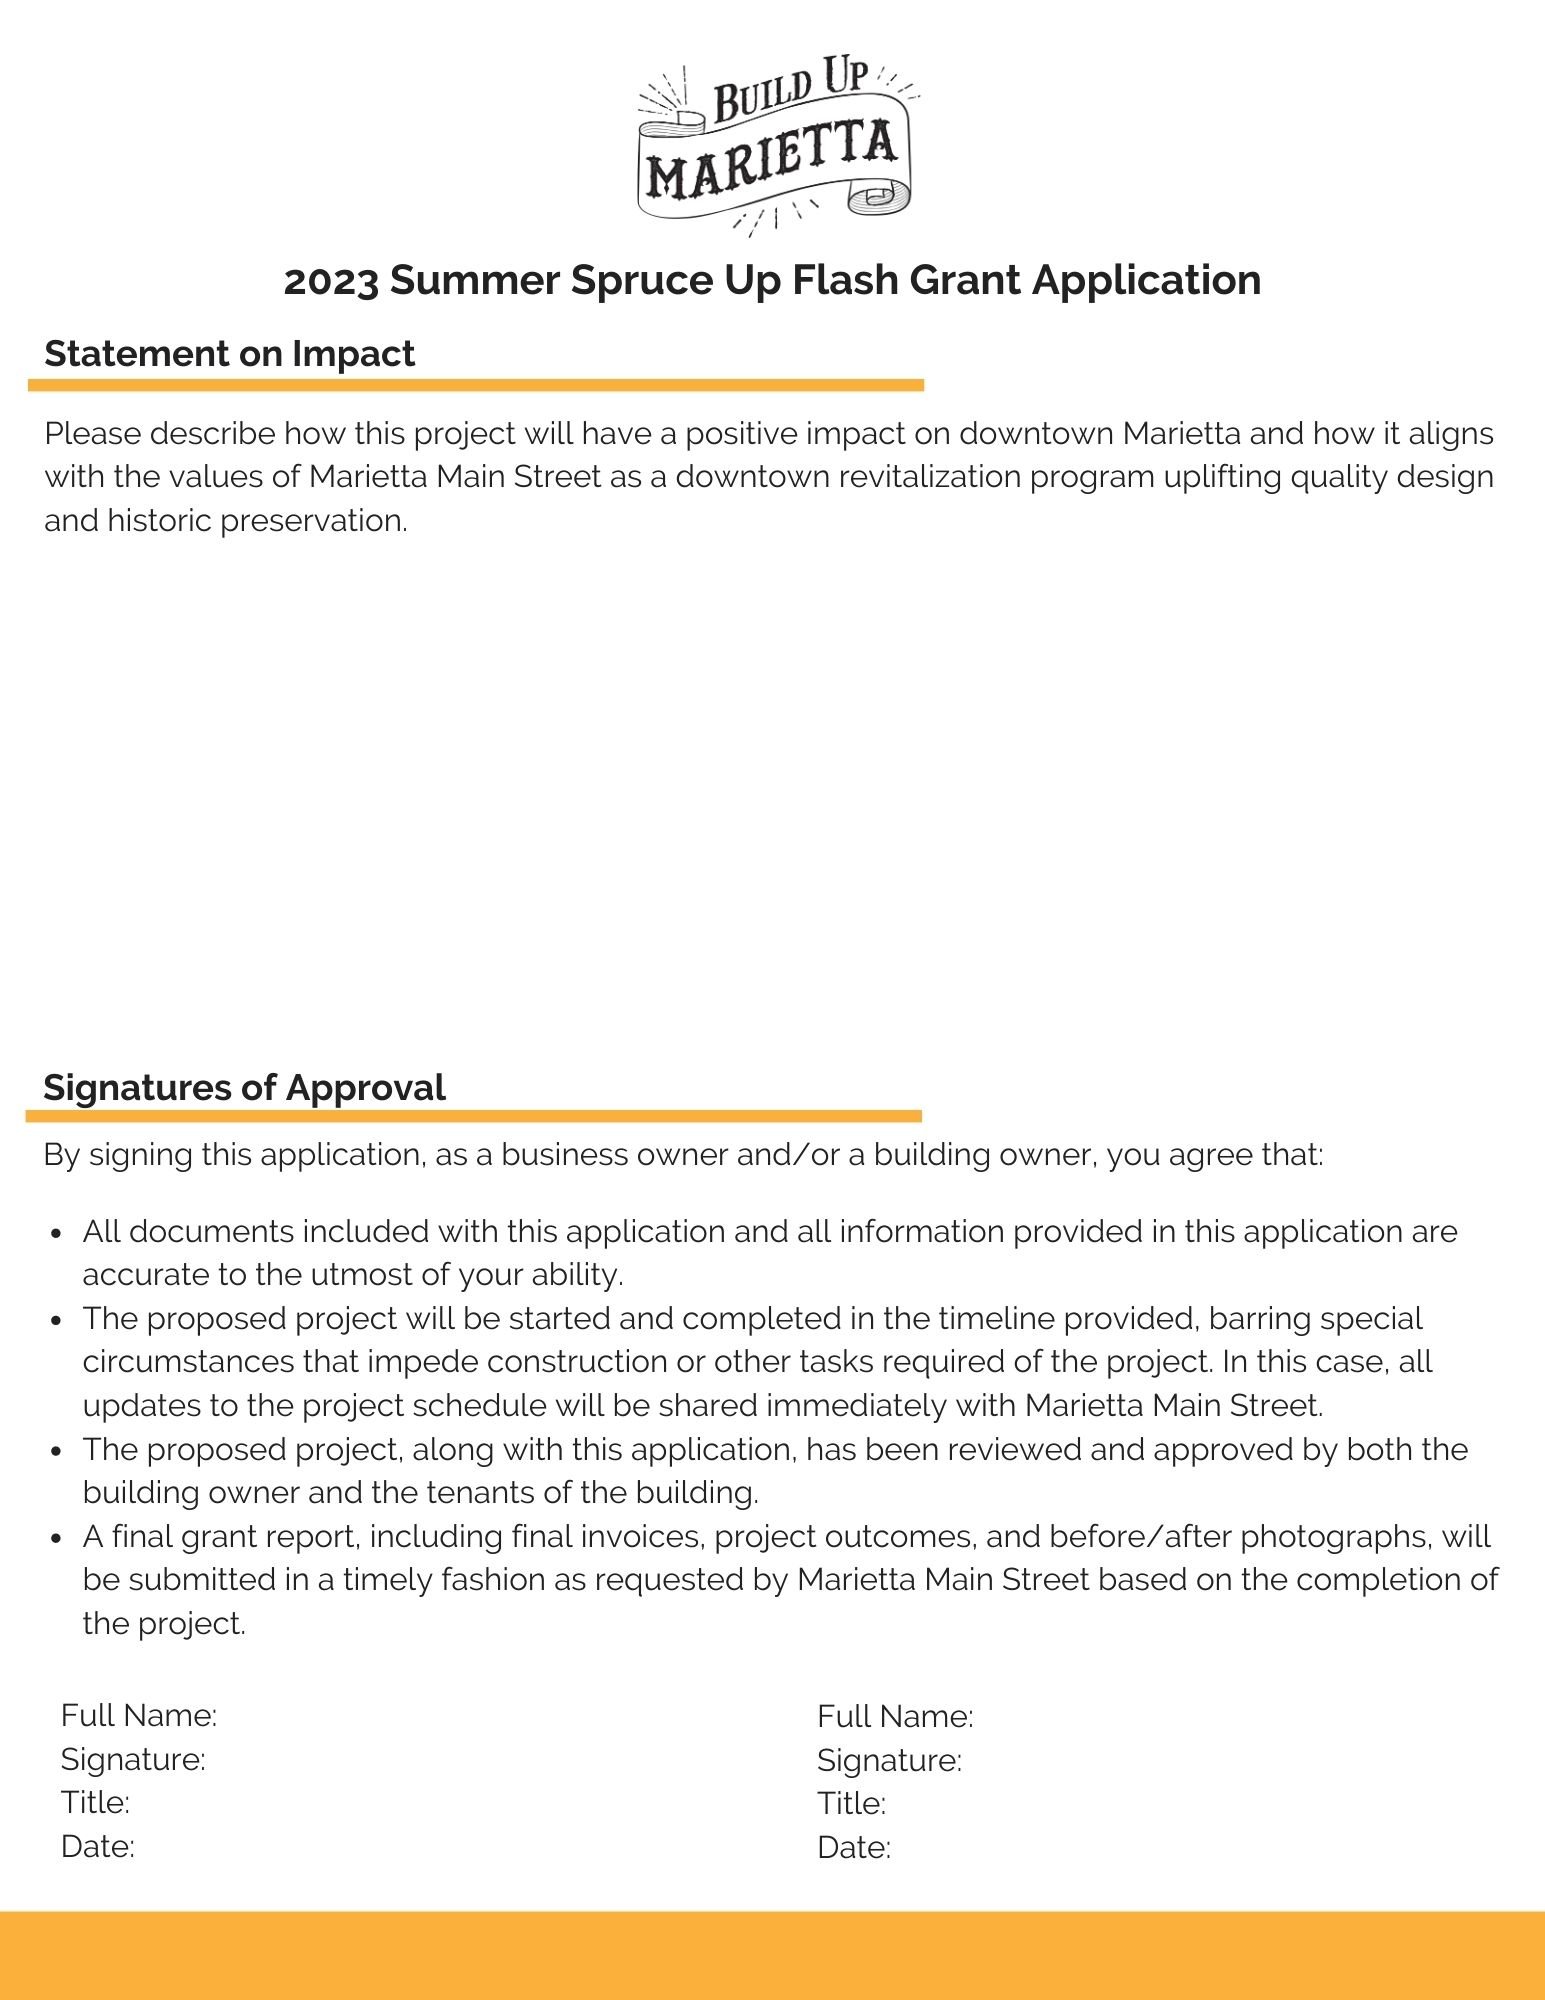 Build Up Marietta - 2023 Summer Flash Grant (5).jpg